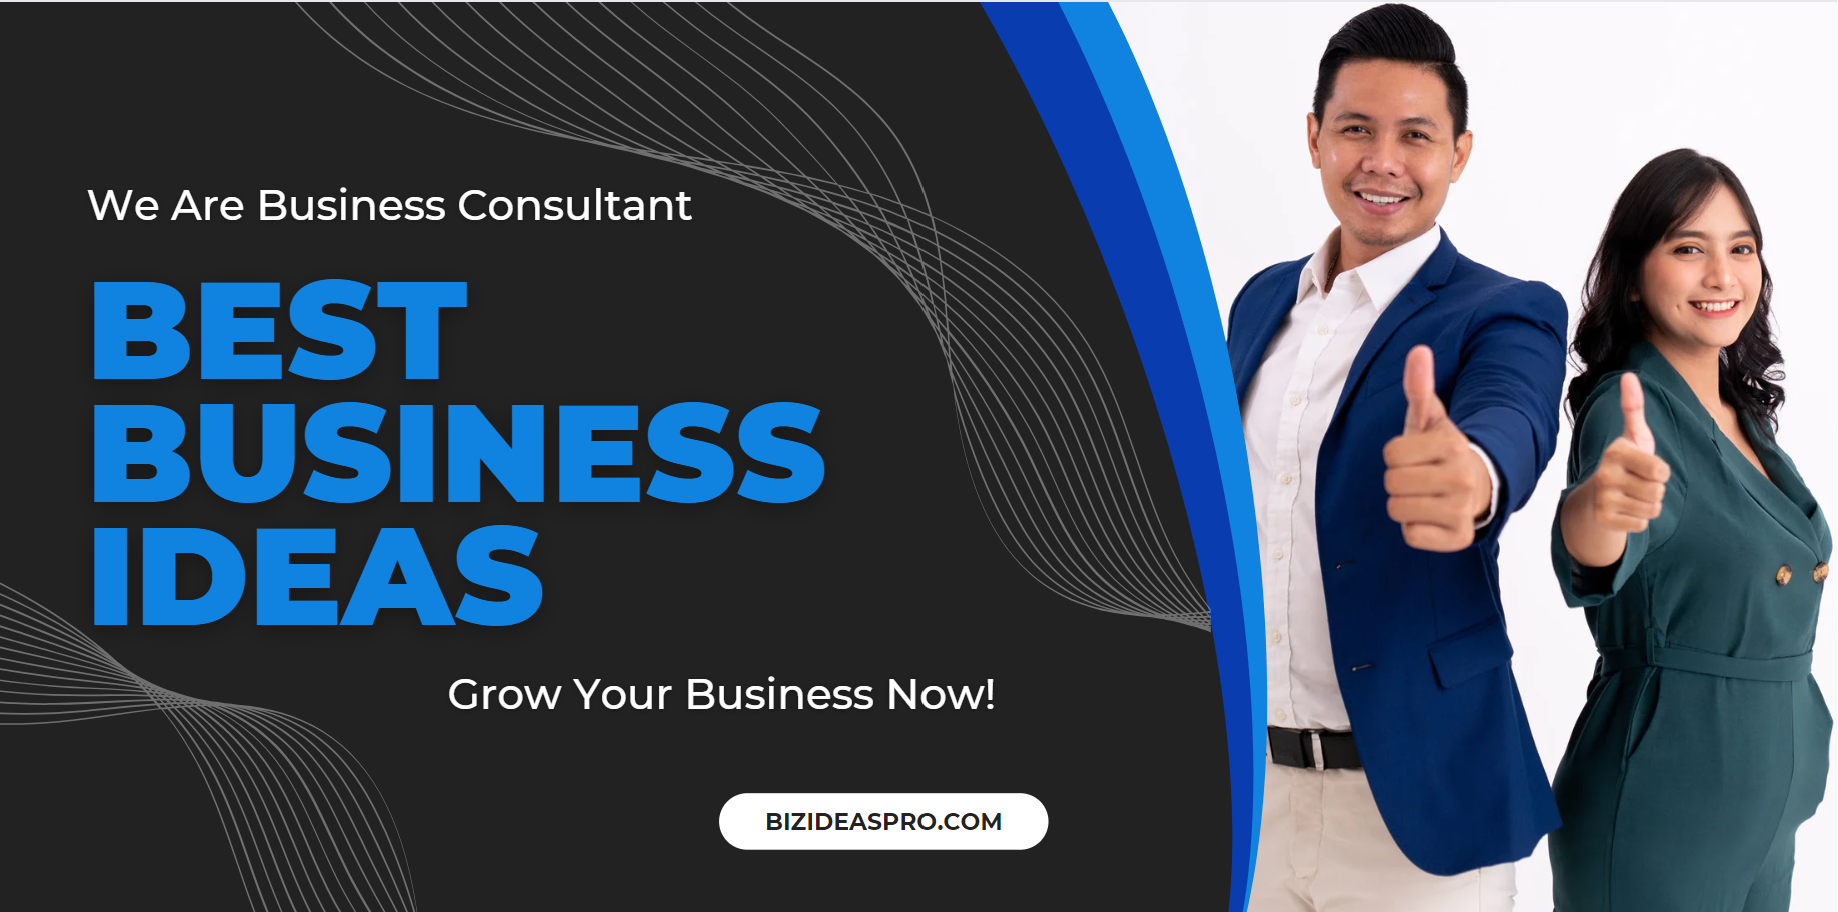 Best Business ideas - bizideaspro.com